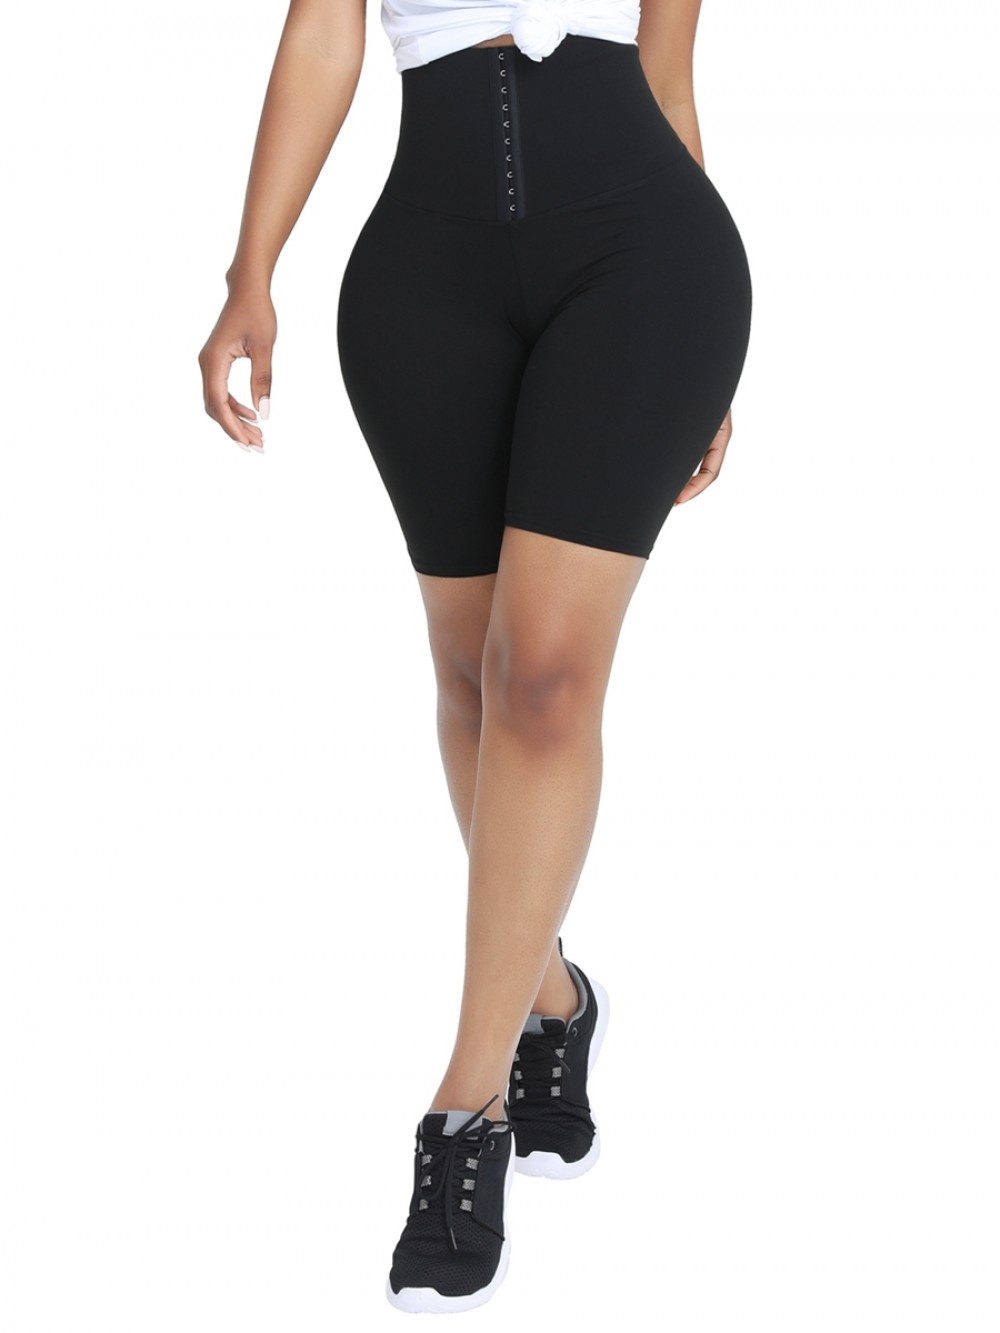 Black High Waist 2-In-1 Waist Trainer Shorts Mid-Thigh Wholesale Online